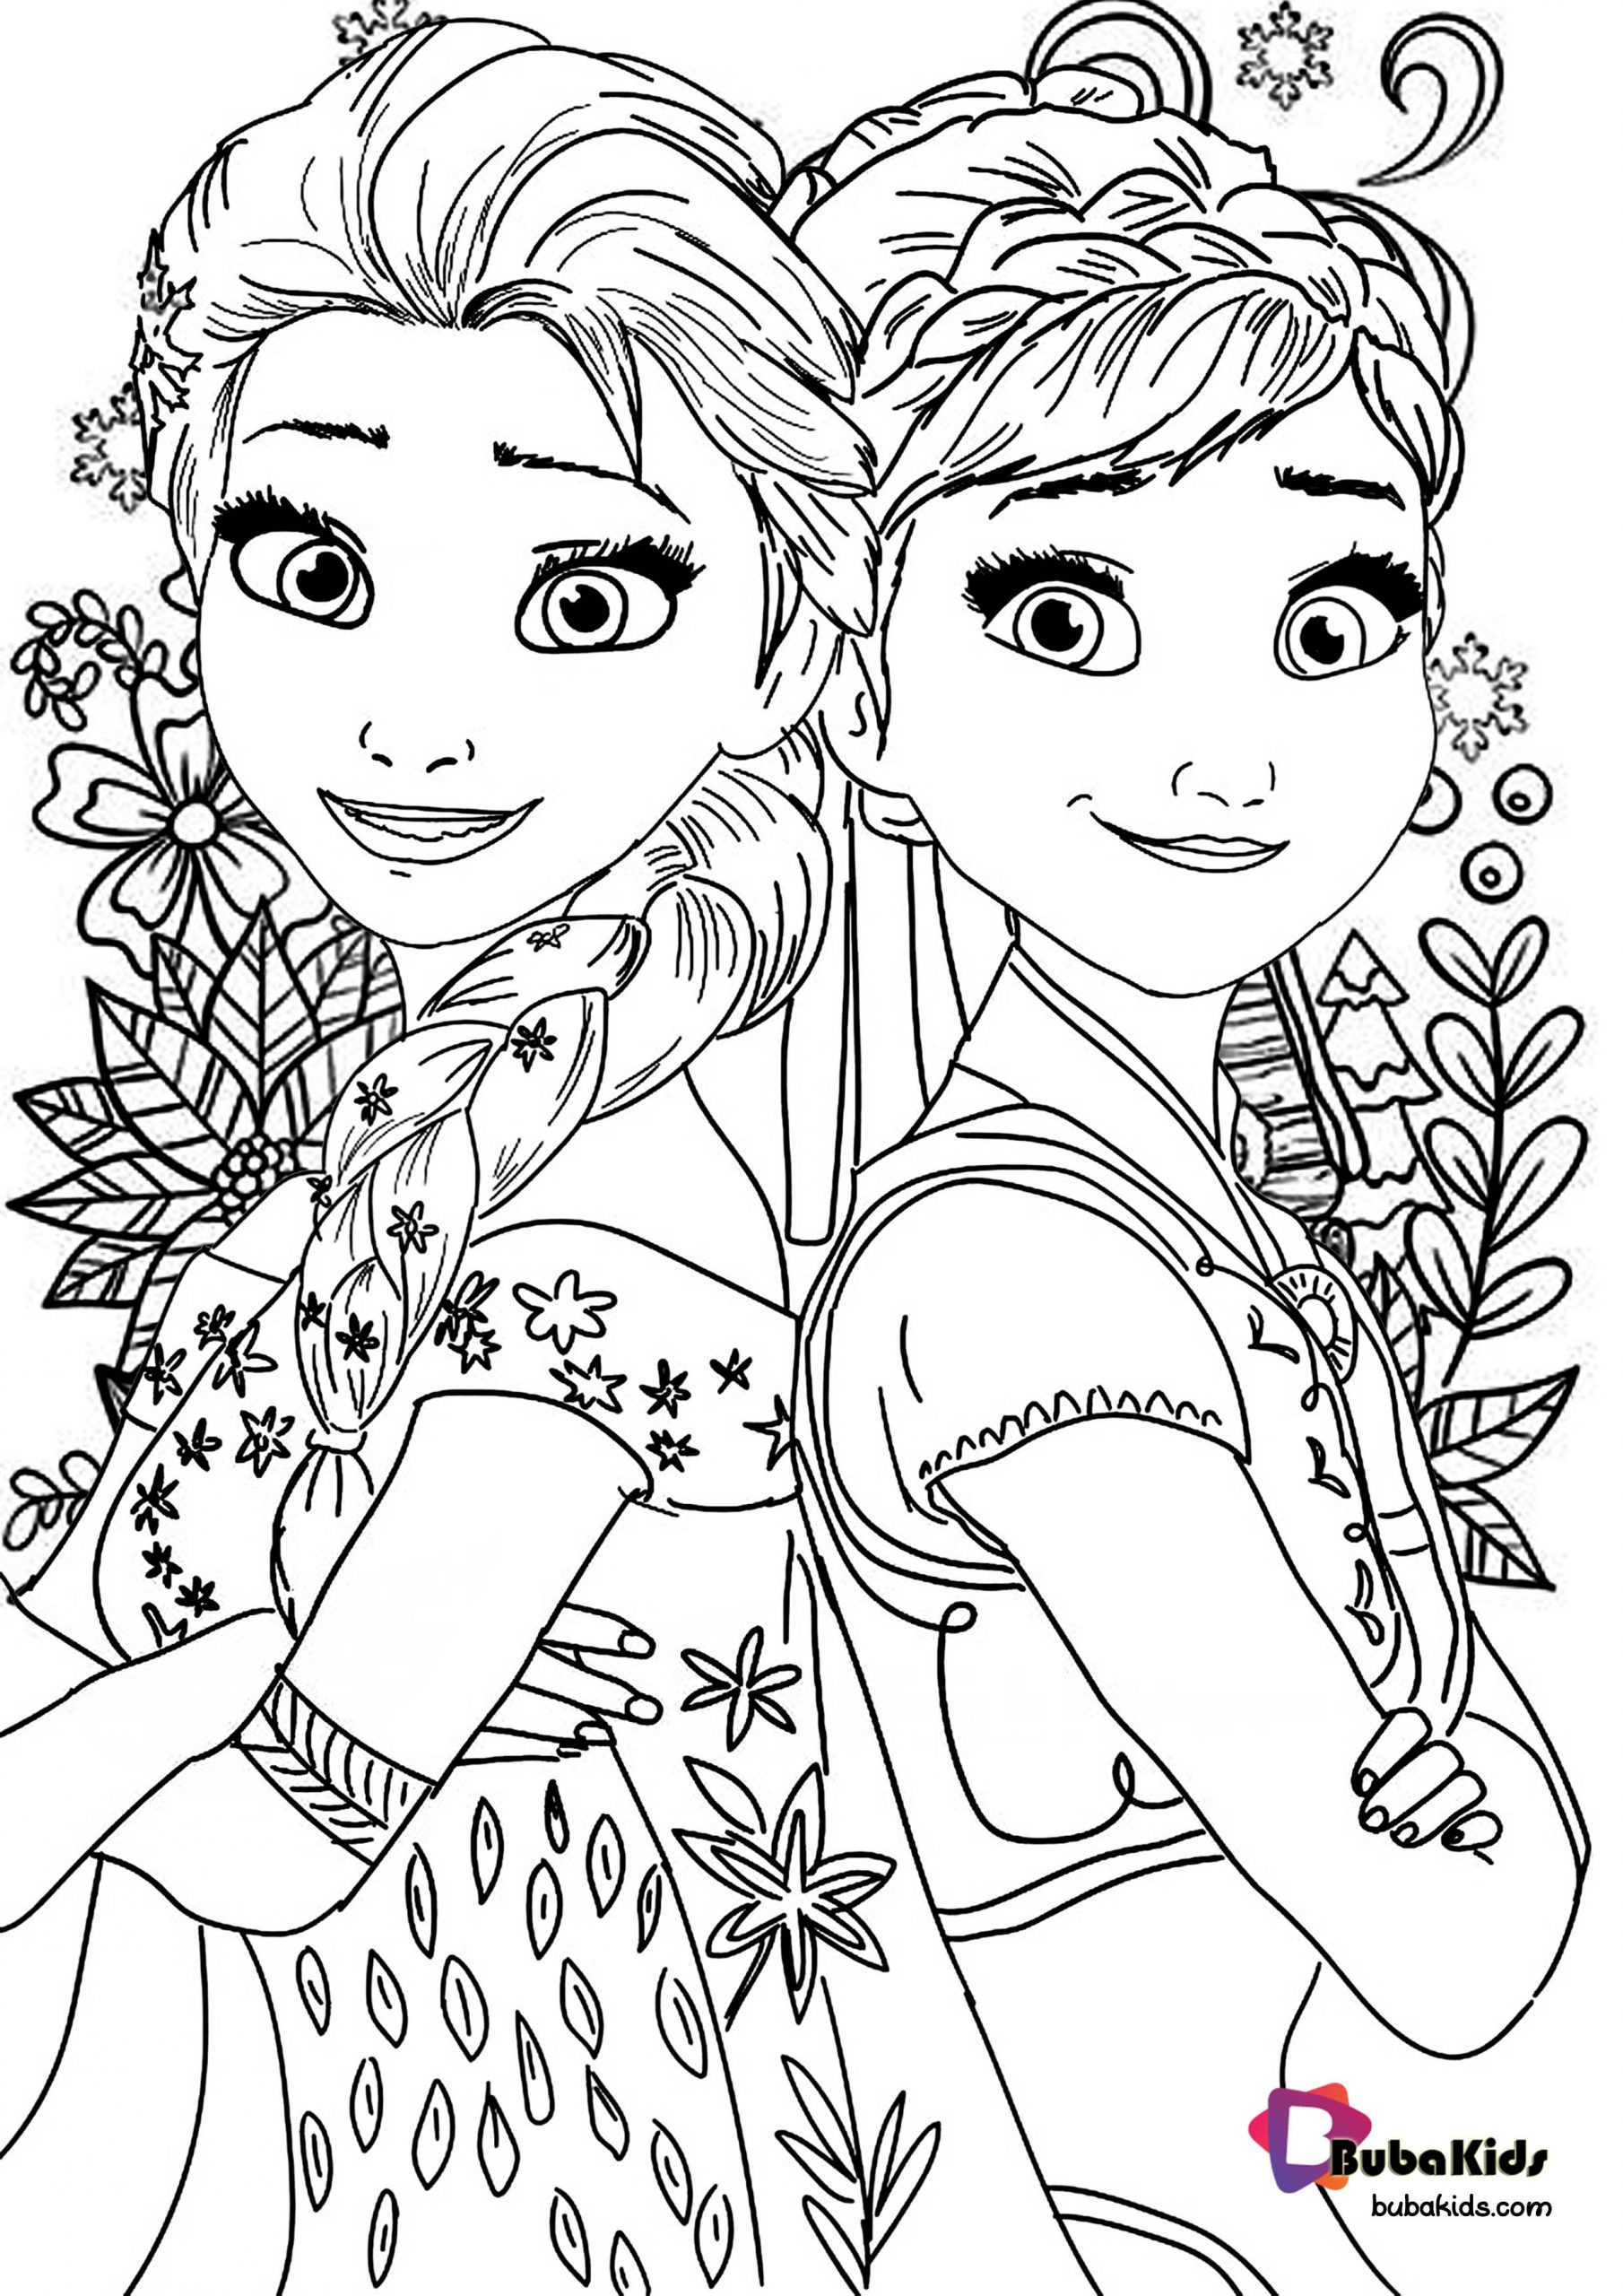 frozen2coloringpage  BubaKidscom  Elsa coloring pages Disney 